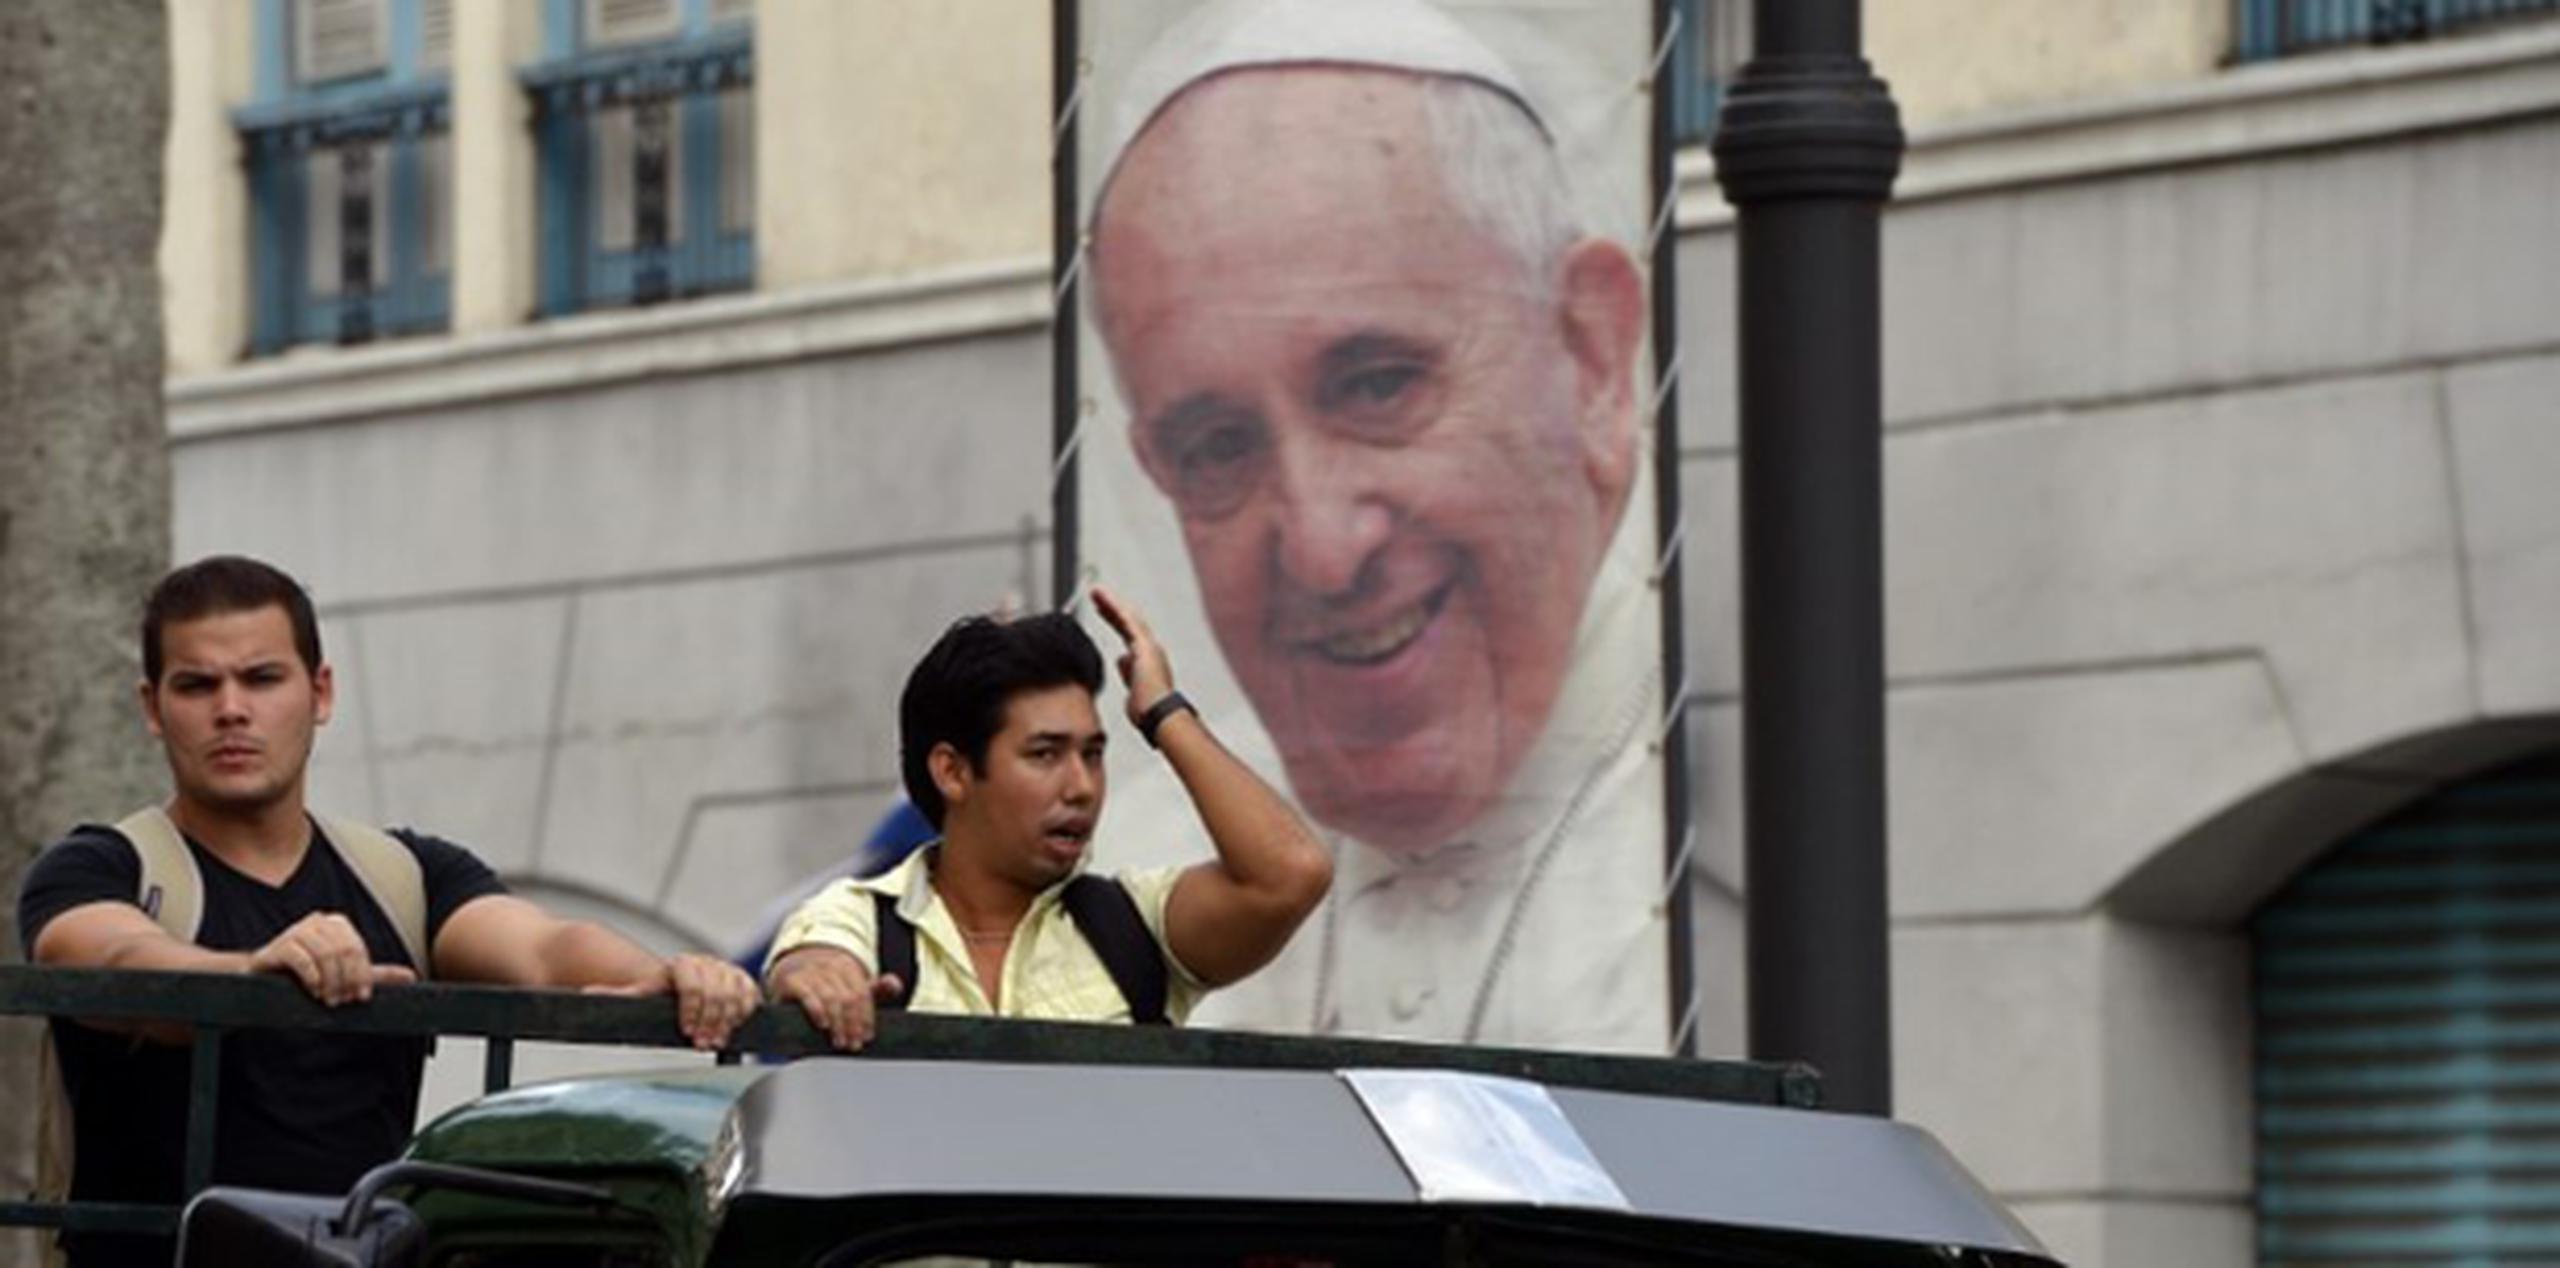 Observadores papales indicaron que es probable que Francisco reitere ante el pueblo cubano sus ideas sobre la libertad de expresión y asociación. (AFP)